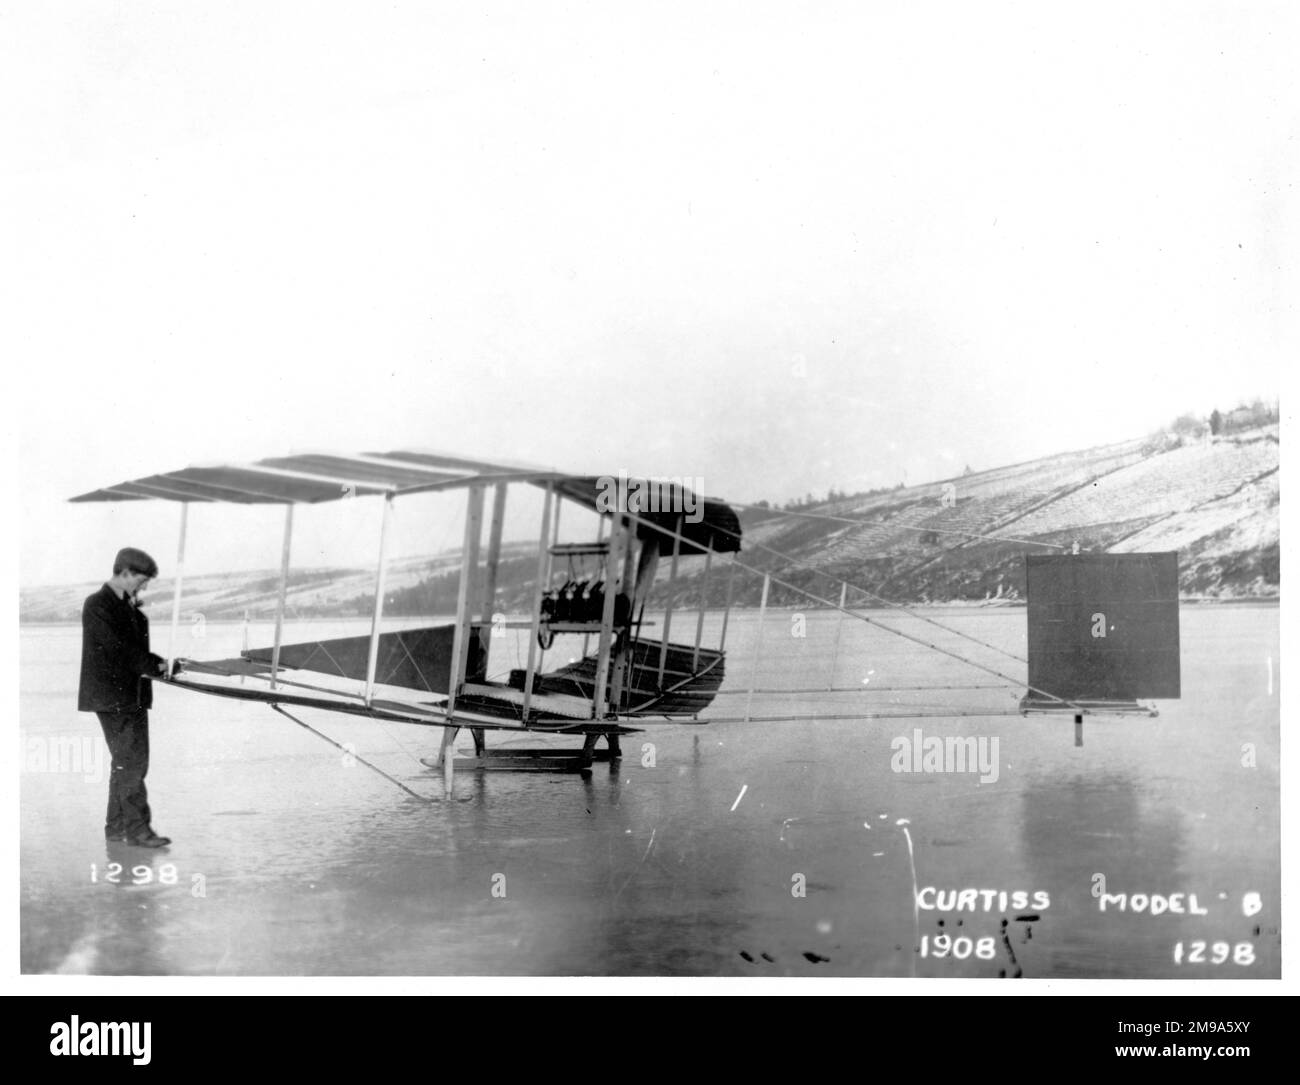 Aeródromo No.1 de la Asociación de Experimentos Aéreos - Ala Roja, visto en los patines en el momento de su primer vuelo un lago congelado. El primero de una serie de aviones de motor experimental diseñados y construidos por la A.E.A., que había sido formado por el Dr. Alexander Graham Bell, con J. A. D. McCurdy (un canadiense), Teniente Thomas Selfridge del Ejército de EE.UU., Y F. W. Casey Baldwin (que no debe confundirse con el capitán Baldwin) y Curtiss como director de experimentos. La Asociación de Experimentos Aéreos (AEA) fue organizada formalmente el 1 de octubre de 1907, como una asociación de tiempo limitado con el propósito de construir un aerogenerador práctico Foto de stock